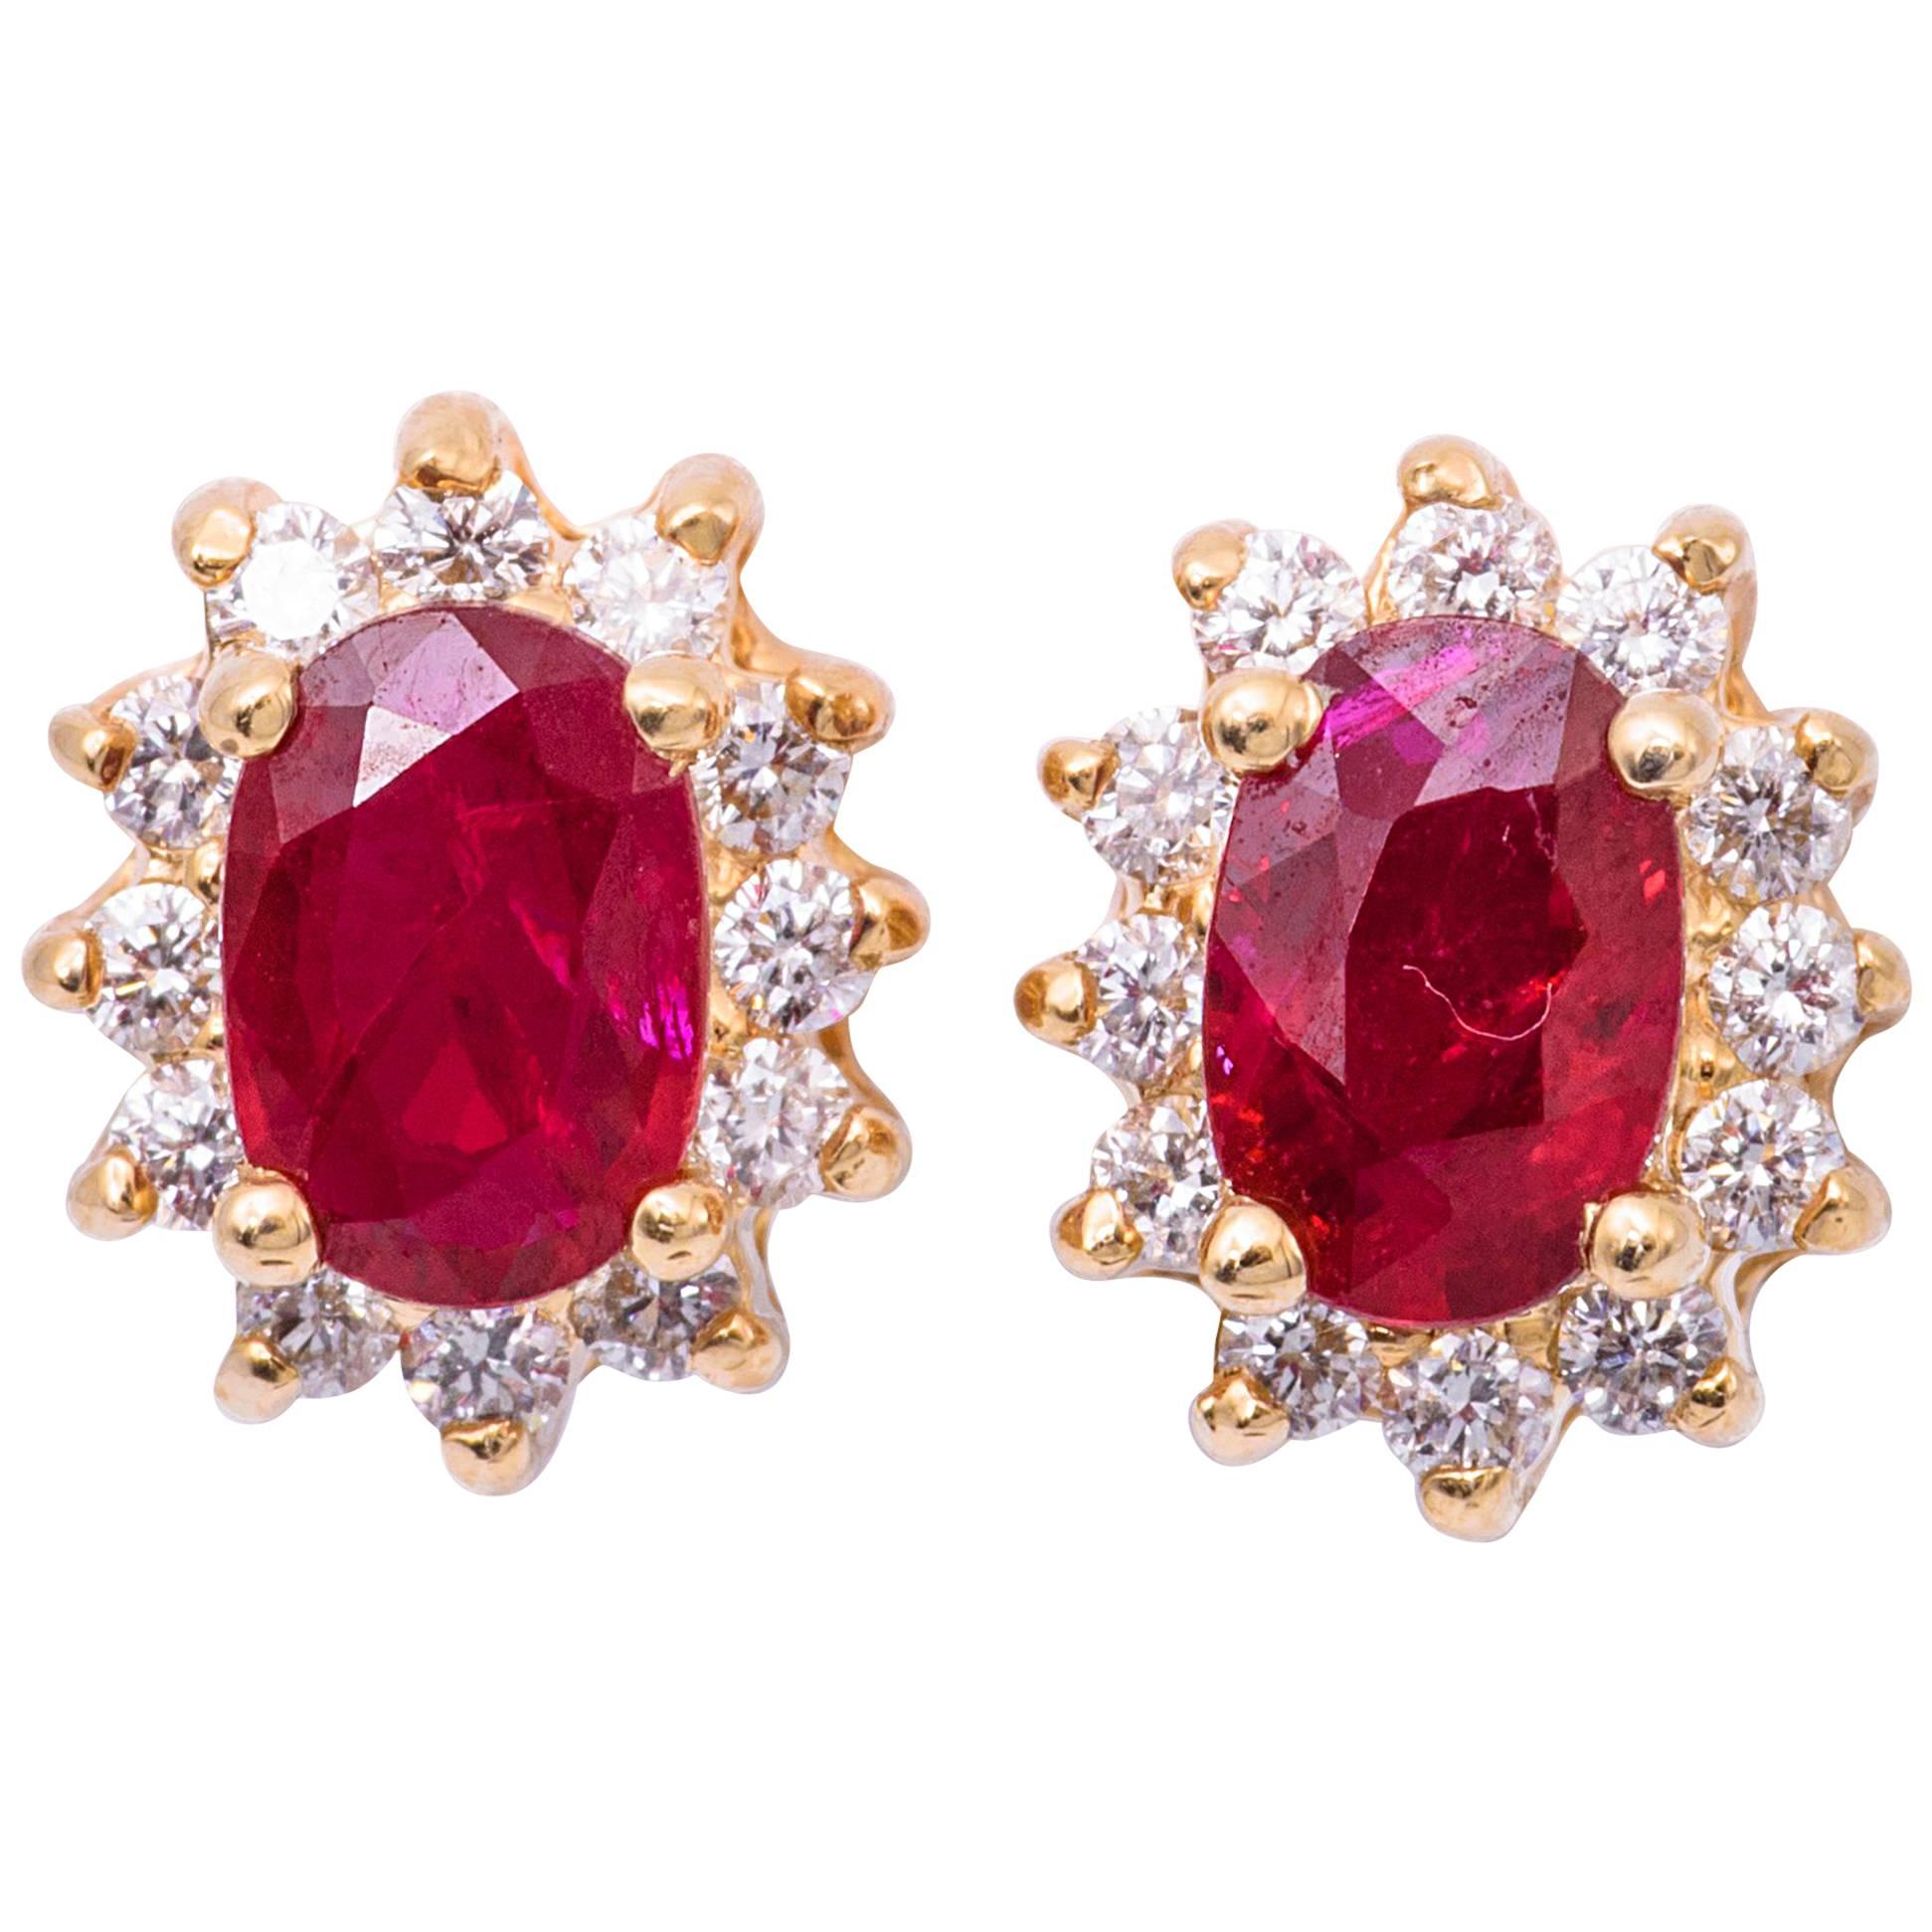 Oval Shape Ruby and Diamond Studs Earrings